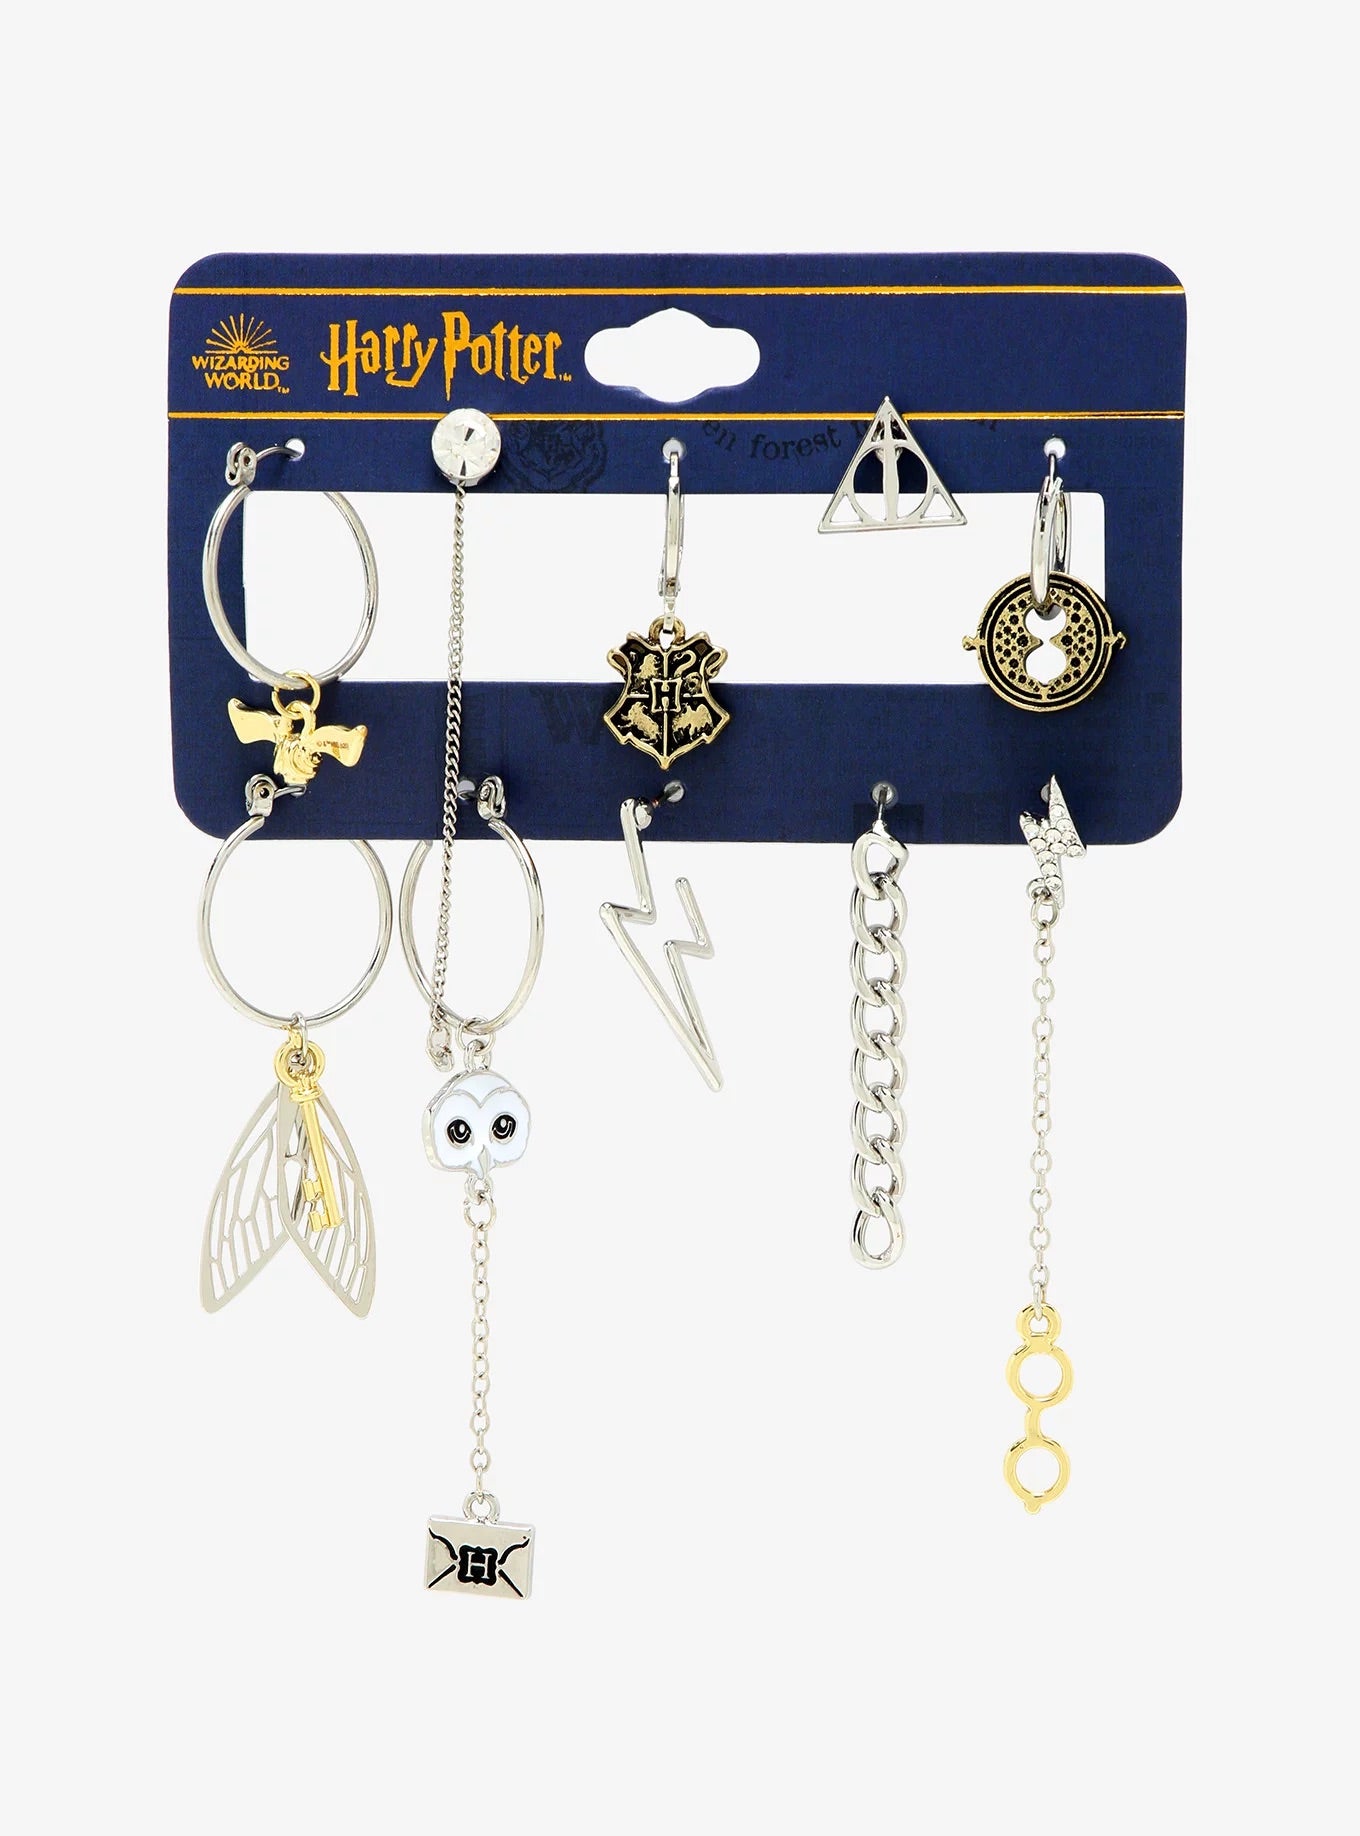 Compra Pendientes Harry Potter Paquete de 12 aretes variados